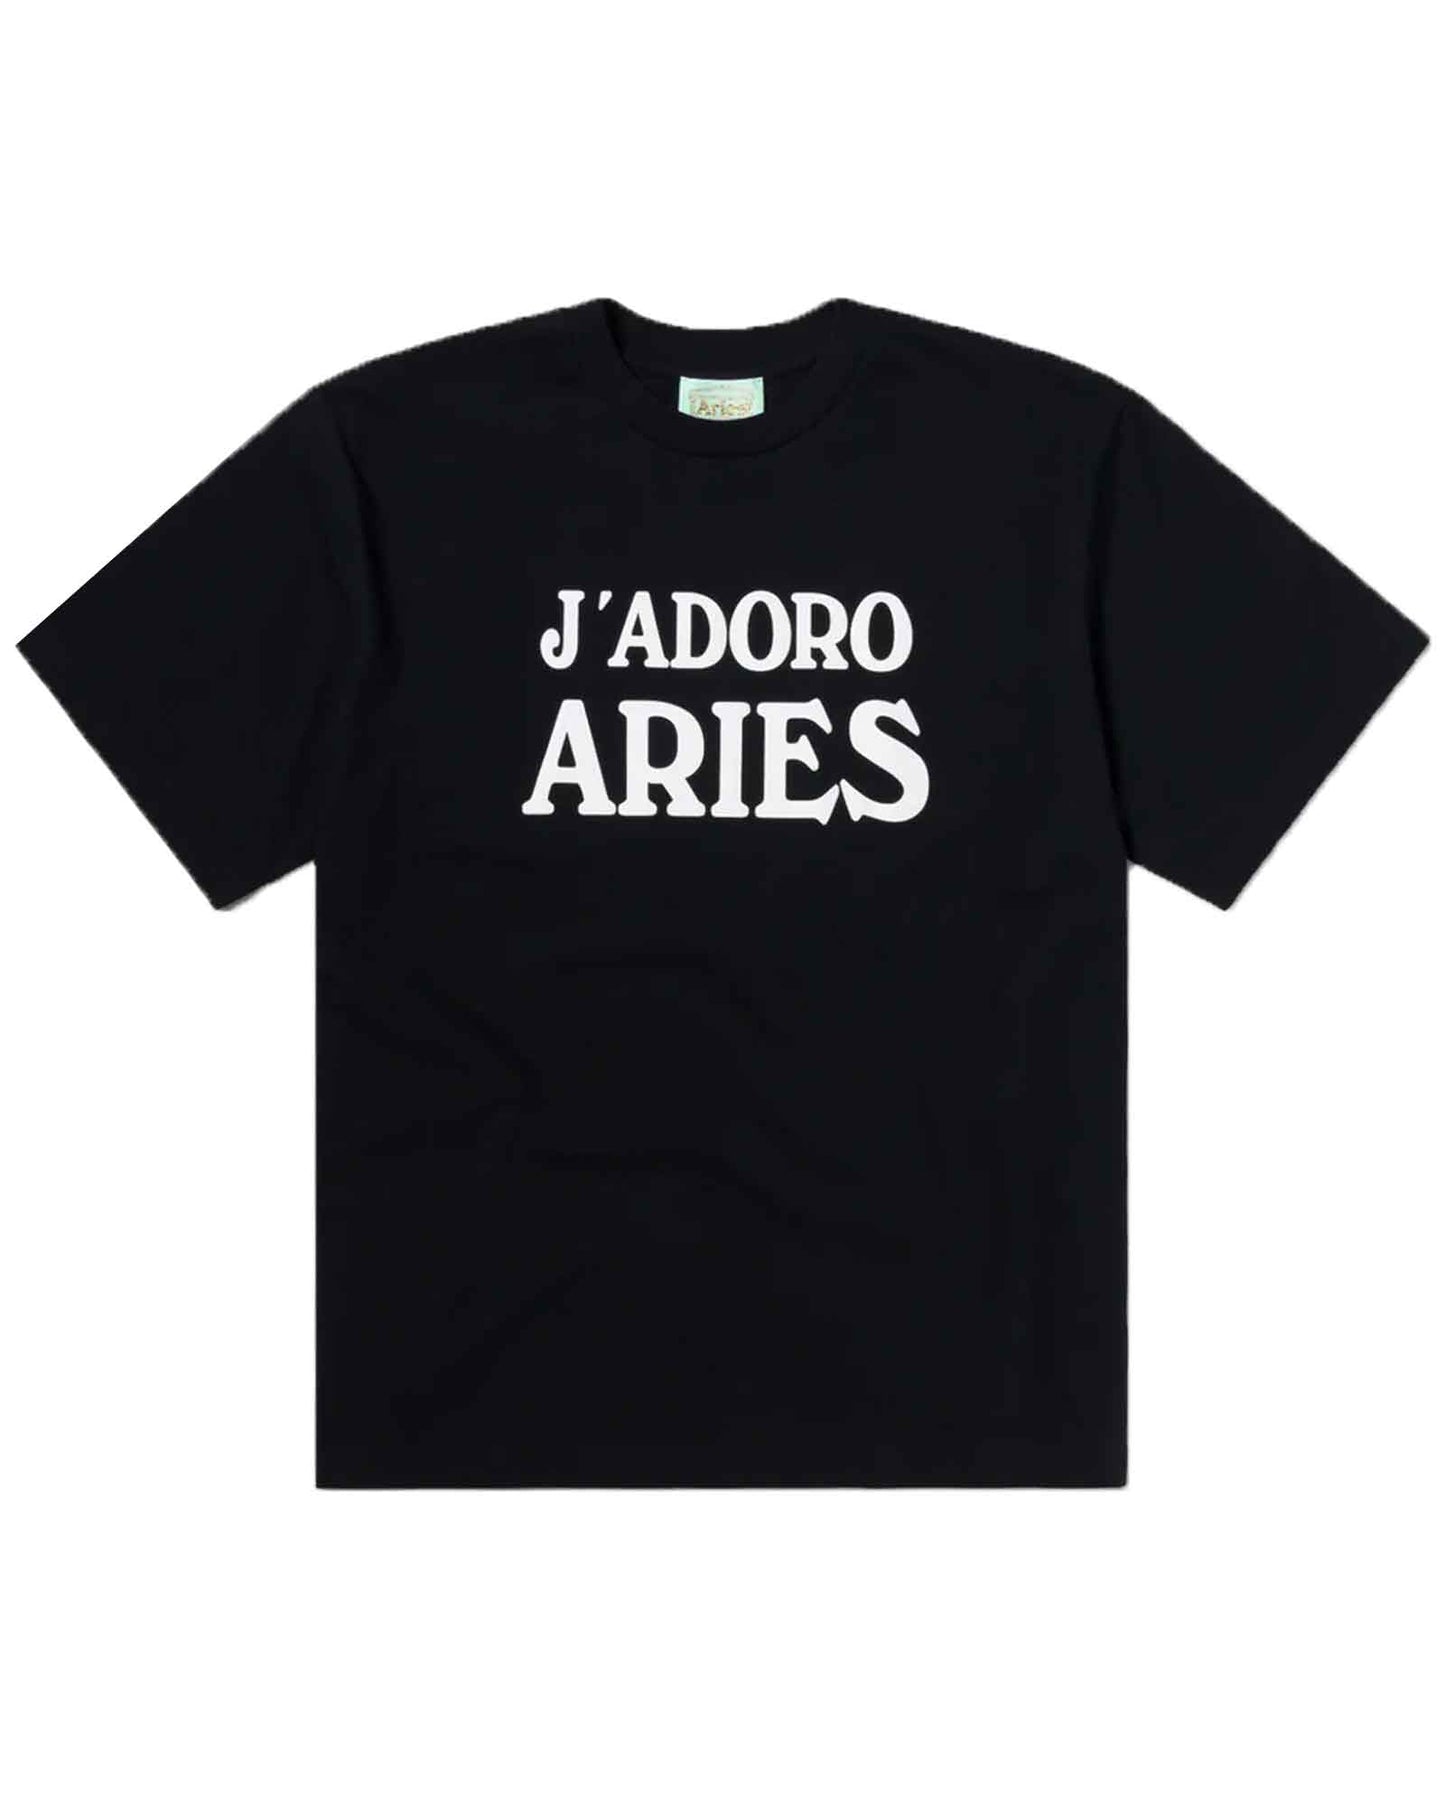 アリーズ/J'ADORO ARIES SS TEE /Tシャツ/ Black